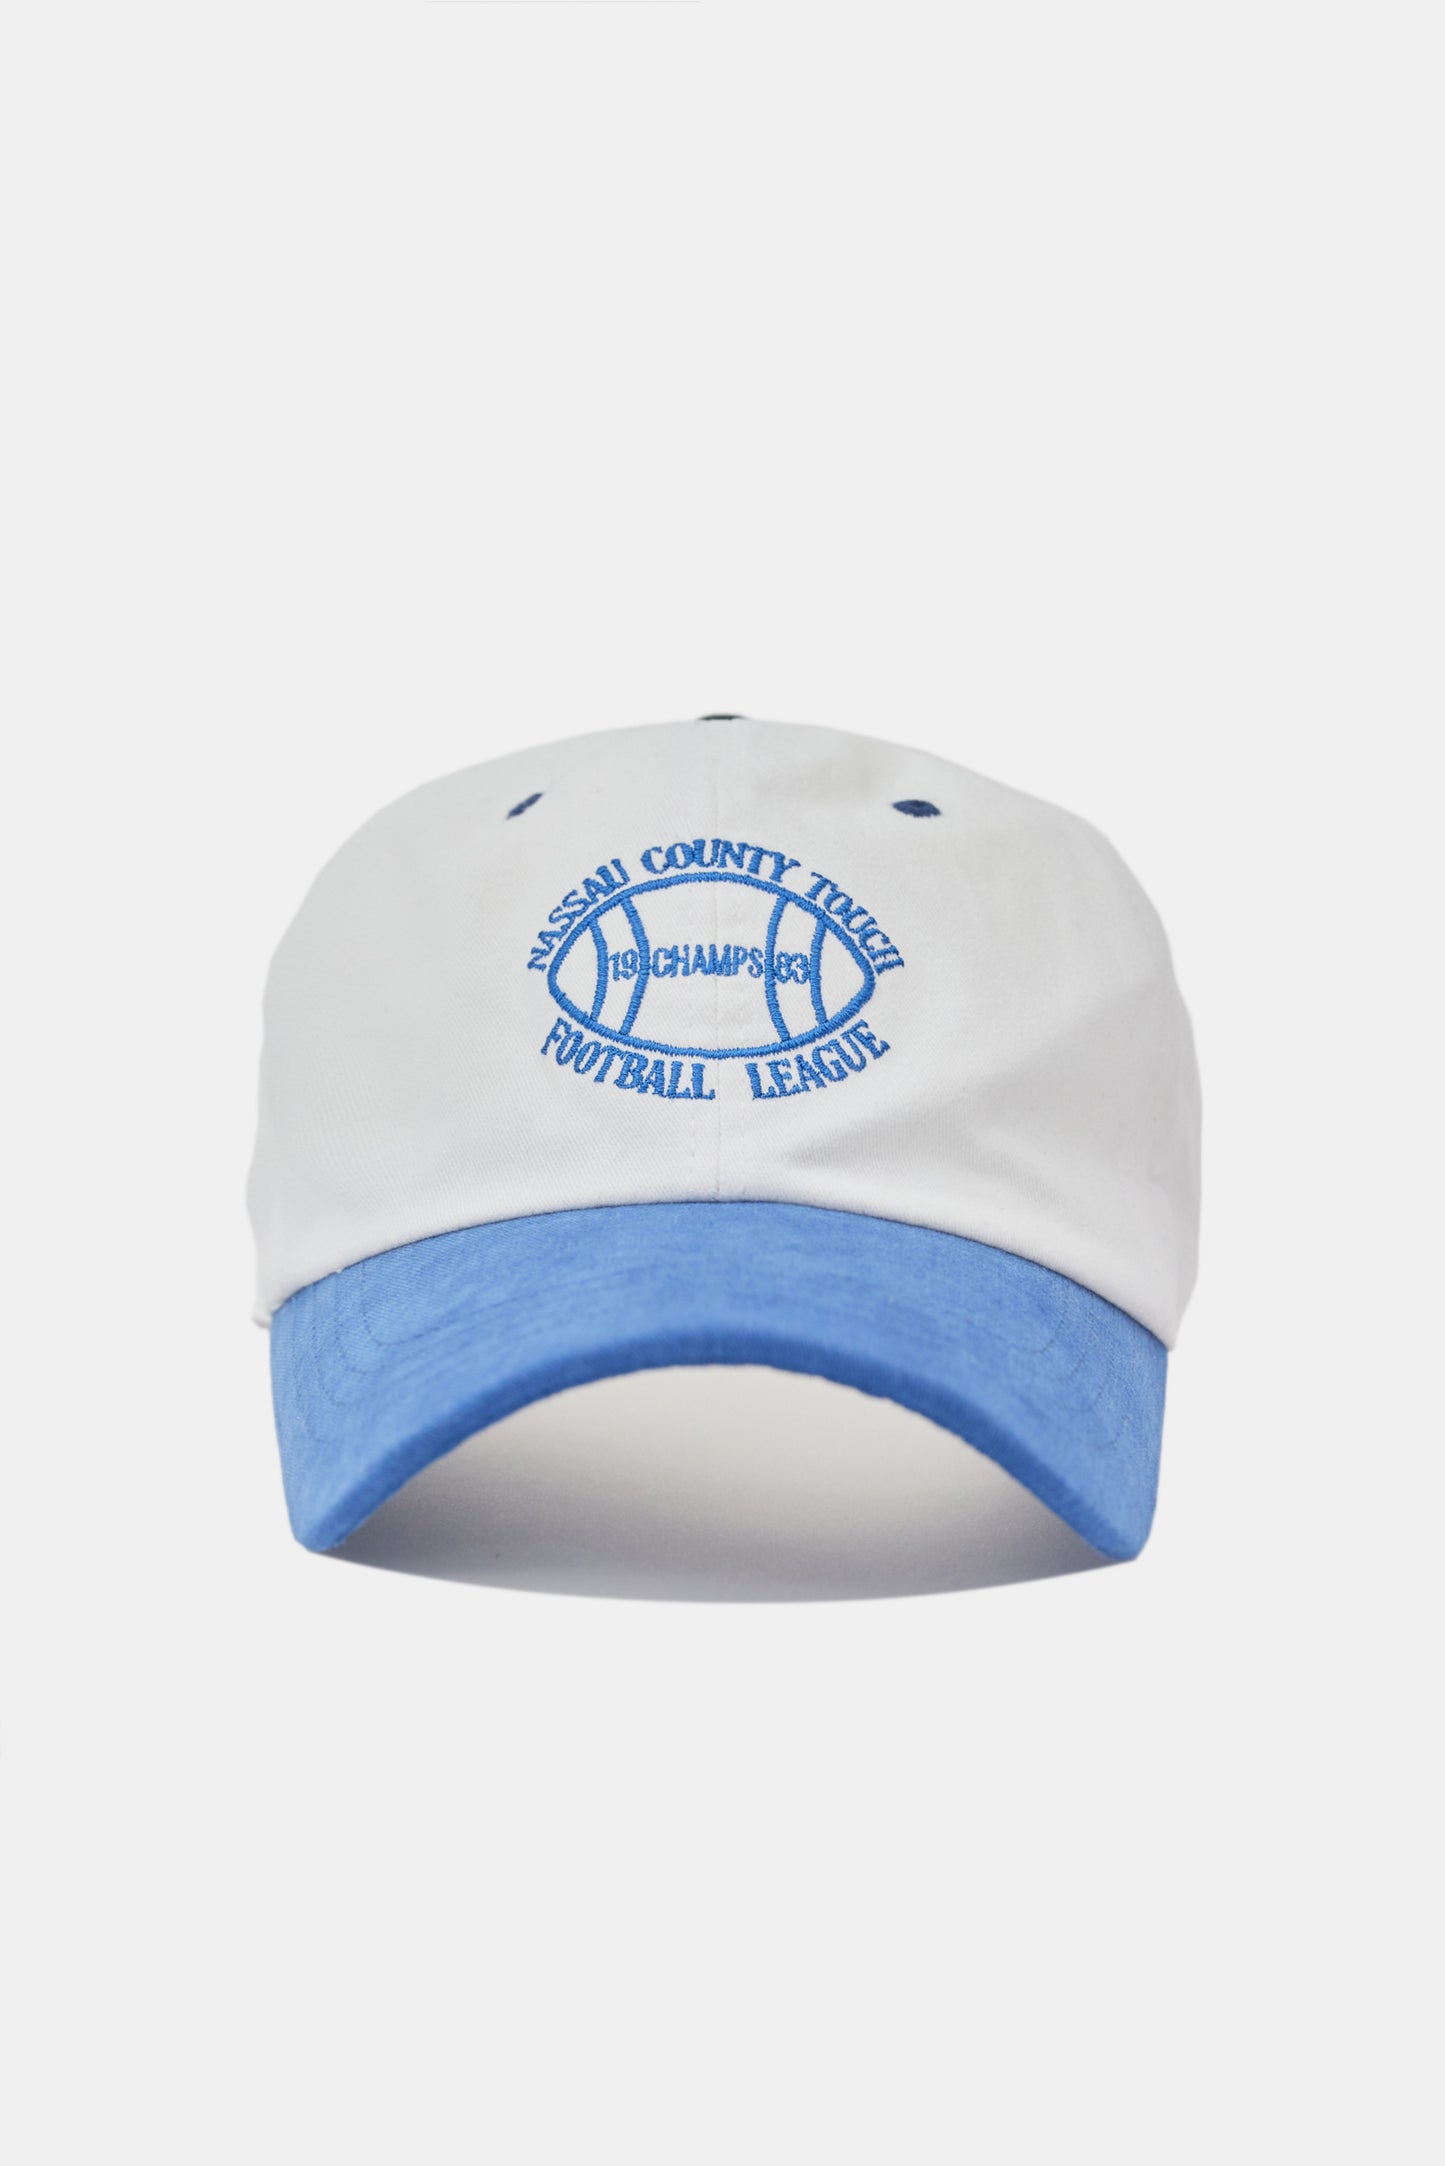 Football League Ballcap, Dodger blue